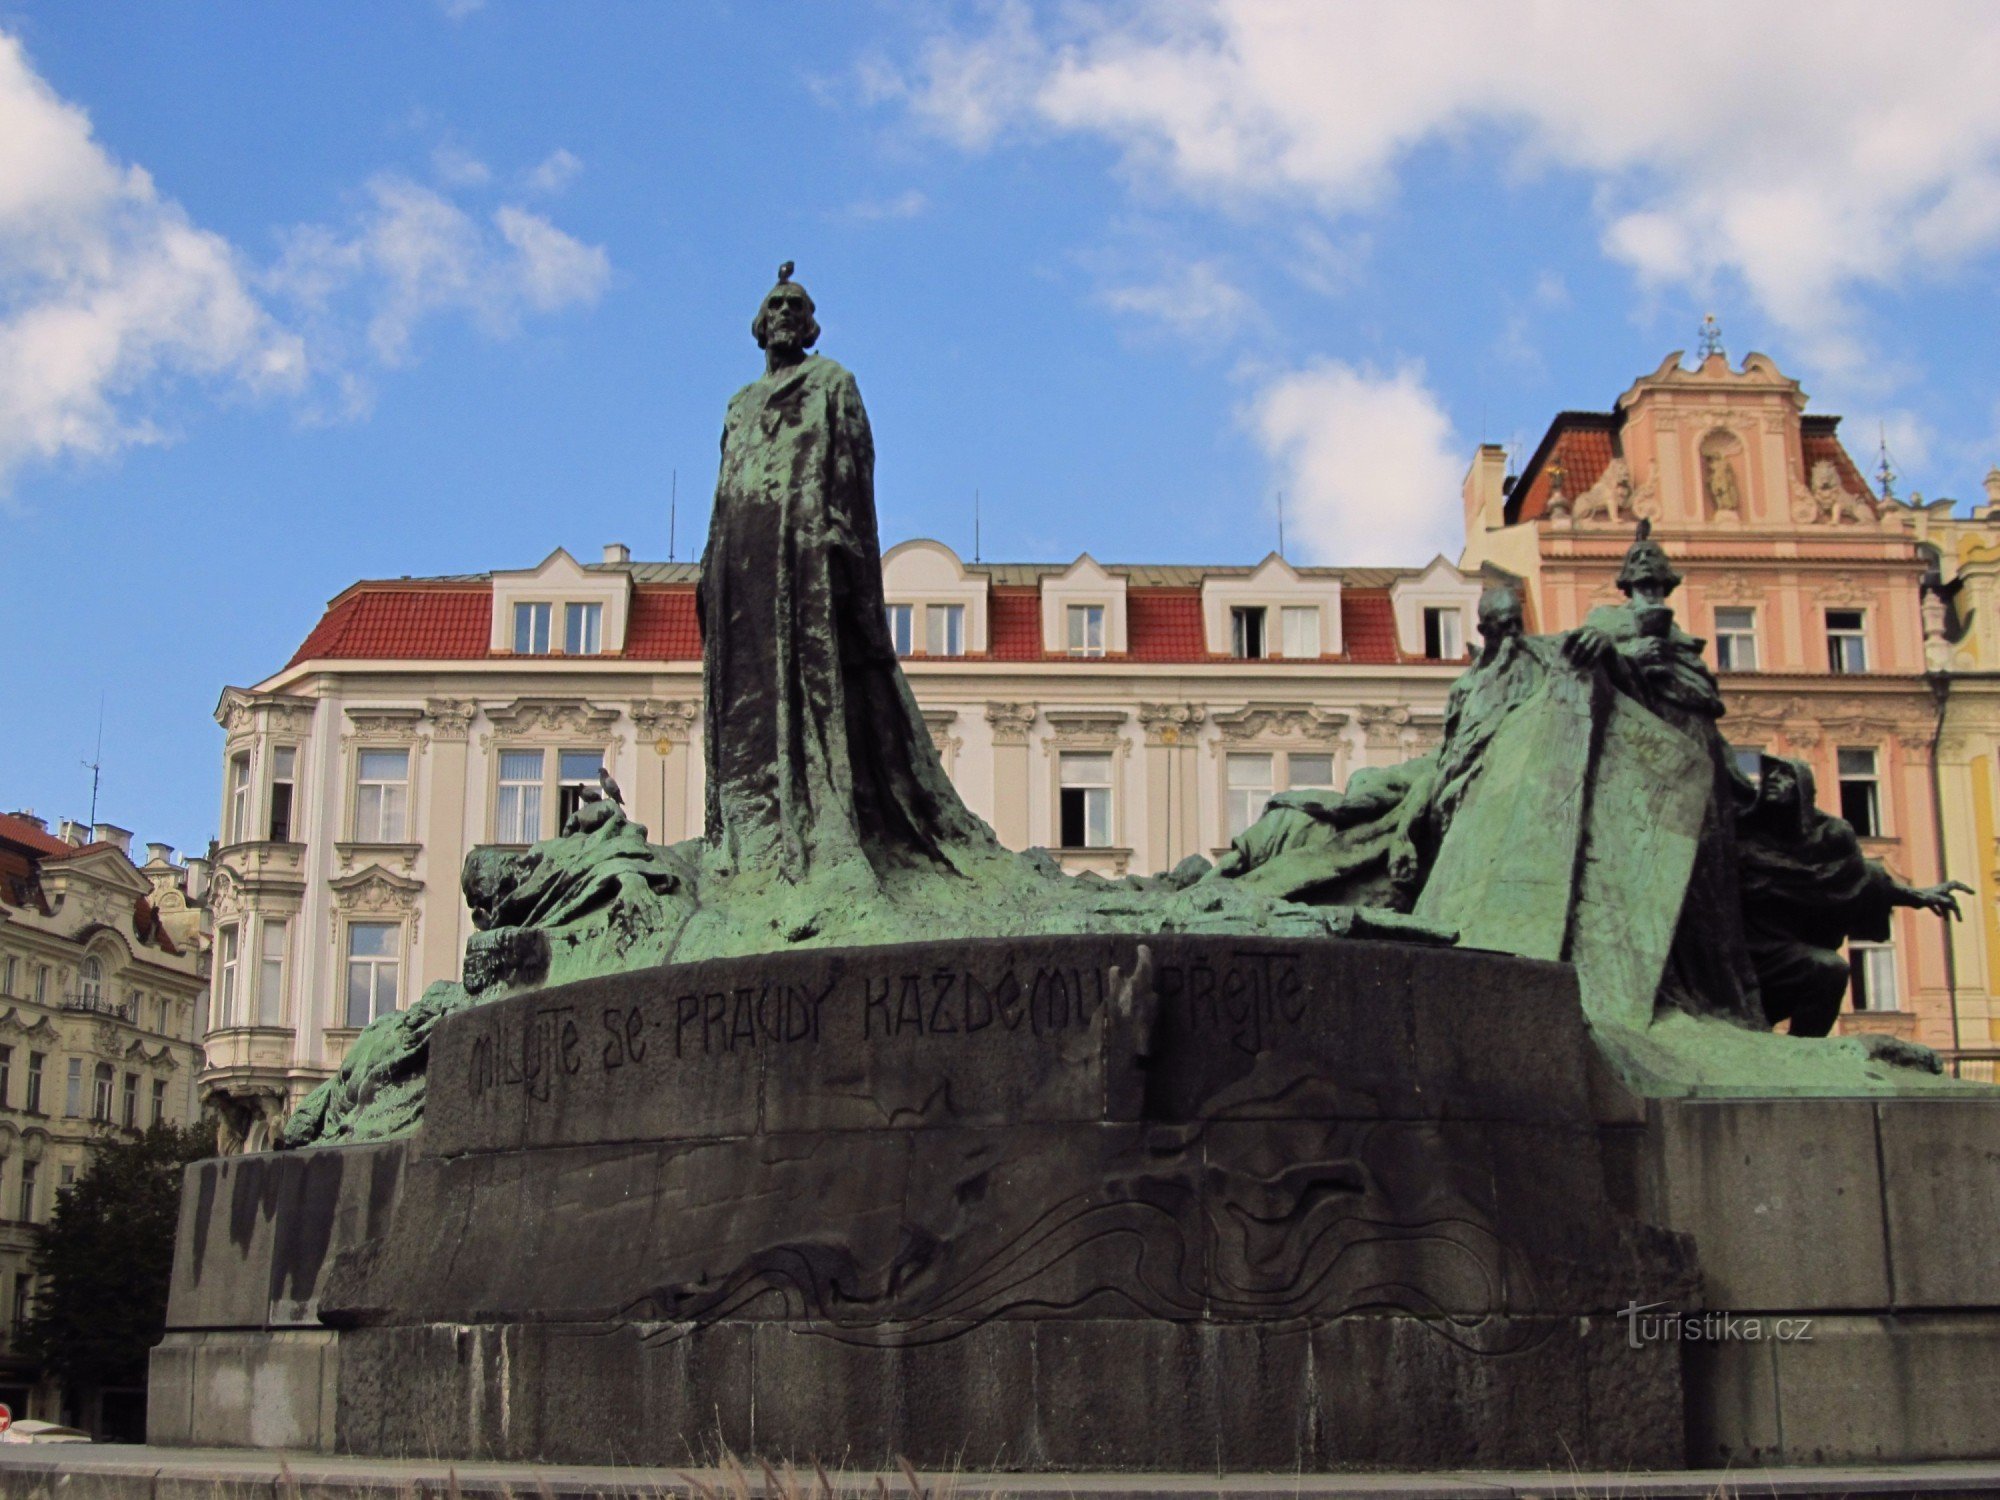 Monumento ao mestre Jan Hus na Praça da Cidade Velha em Praga